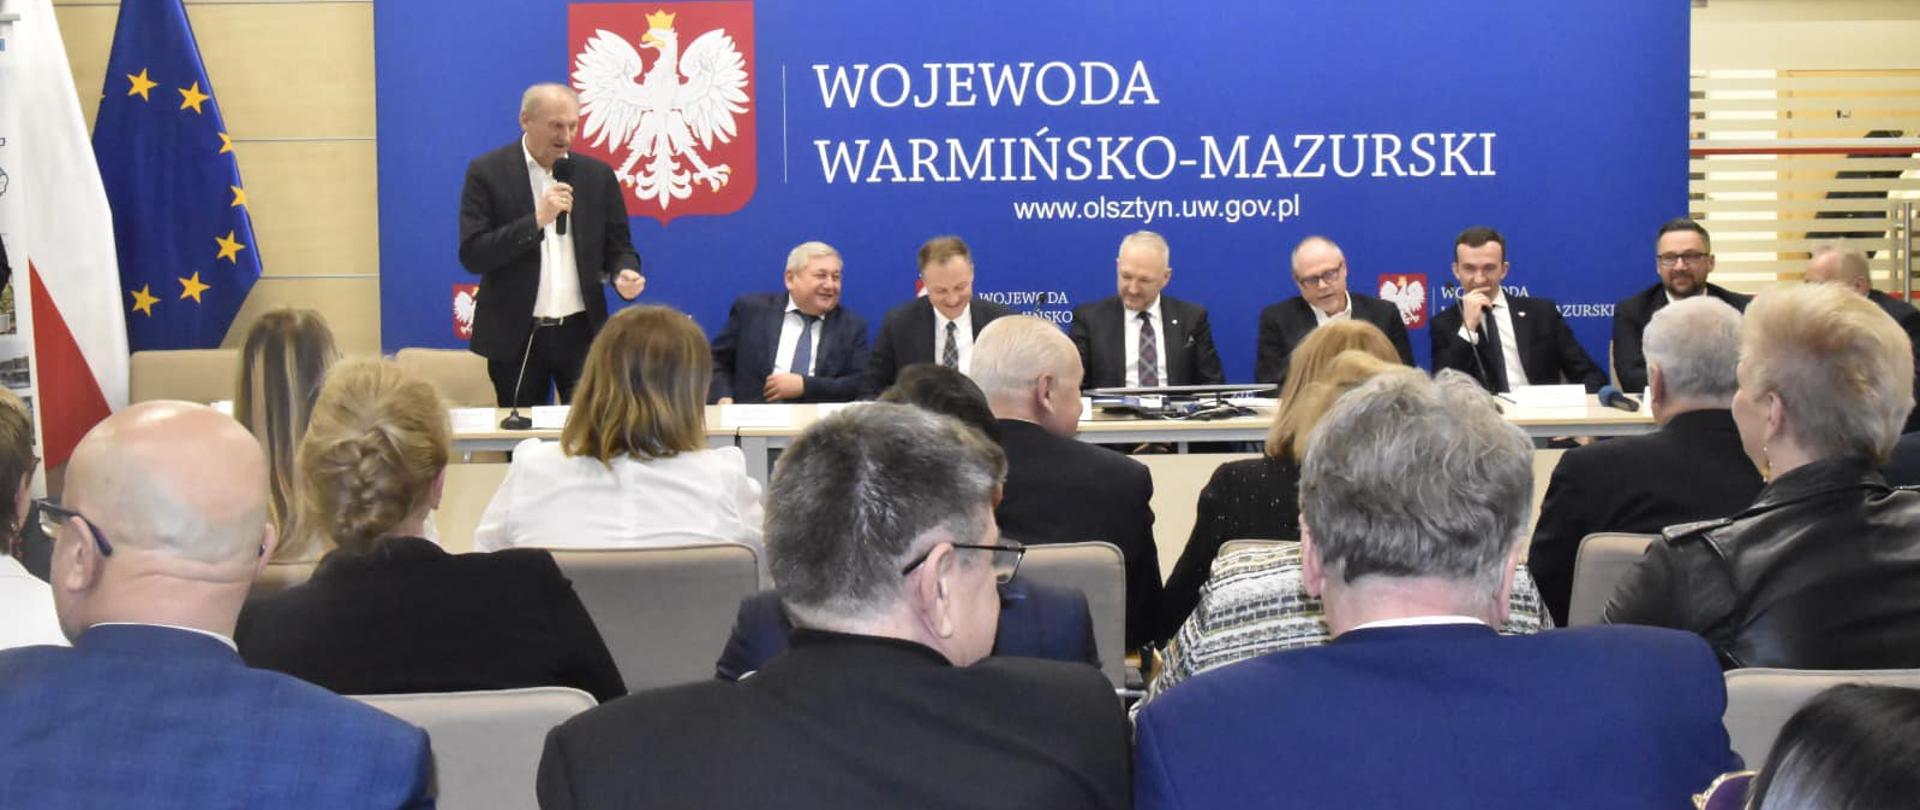 Samorządowcy i parlamentarzyści debatowali w Urzędzie Wojewódzkim 